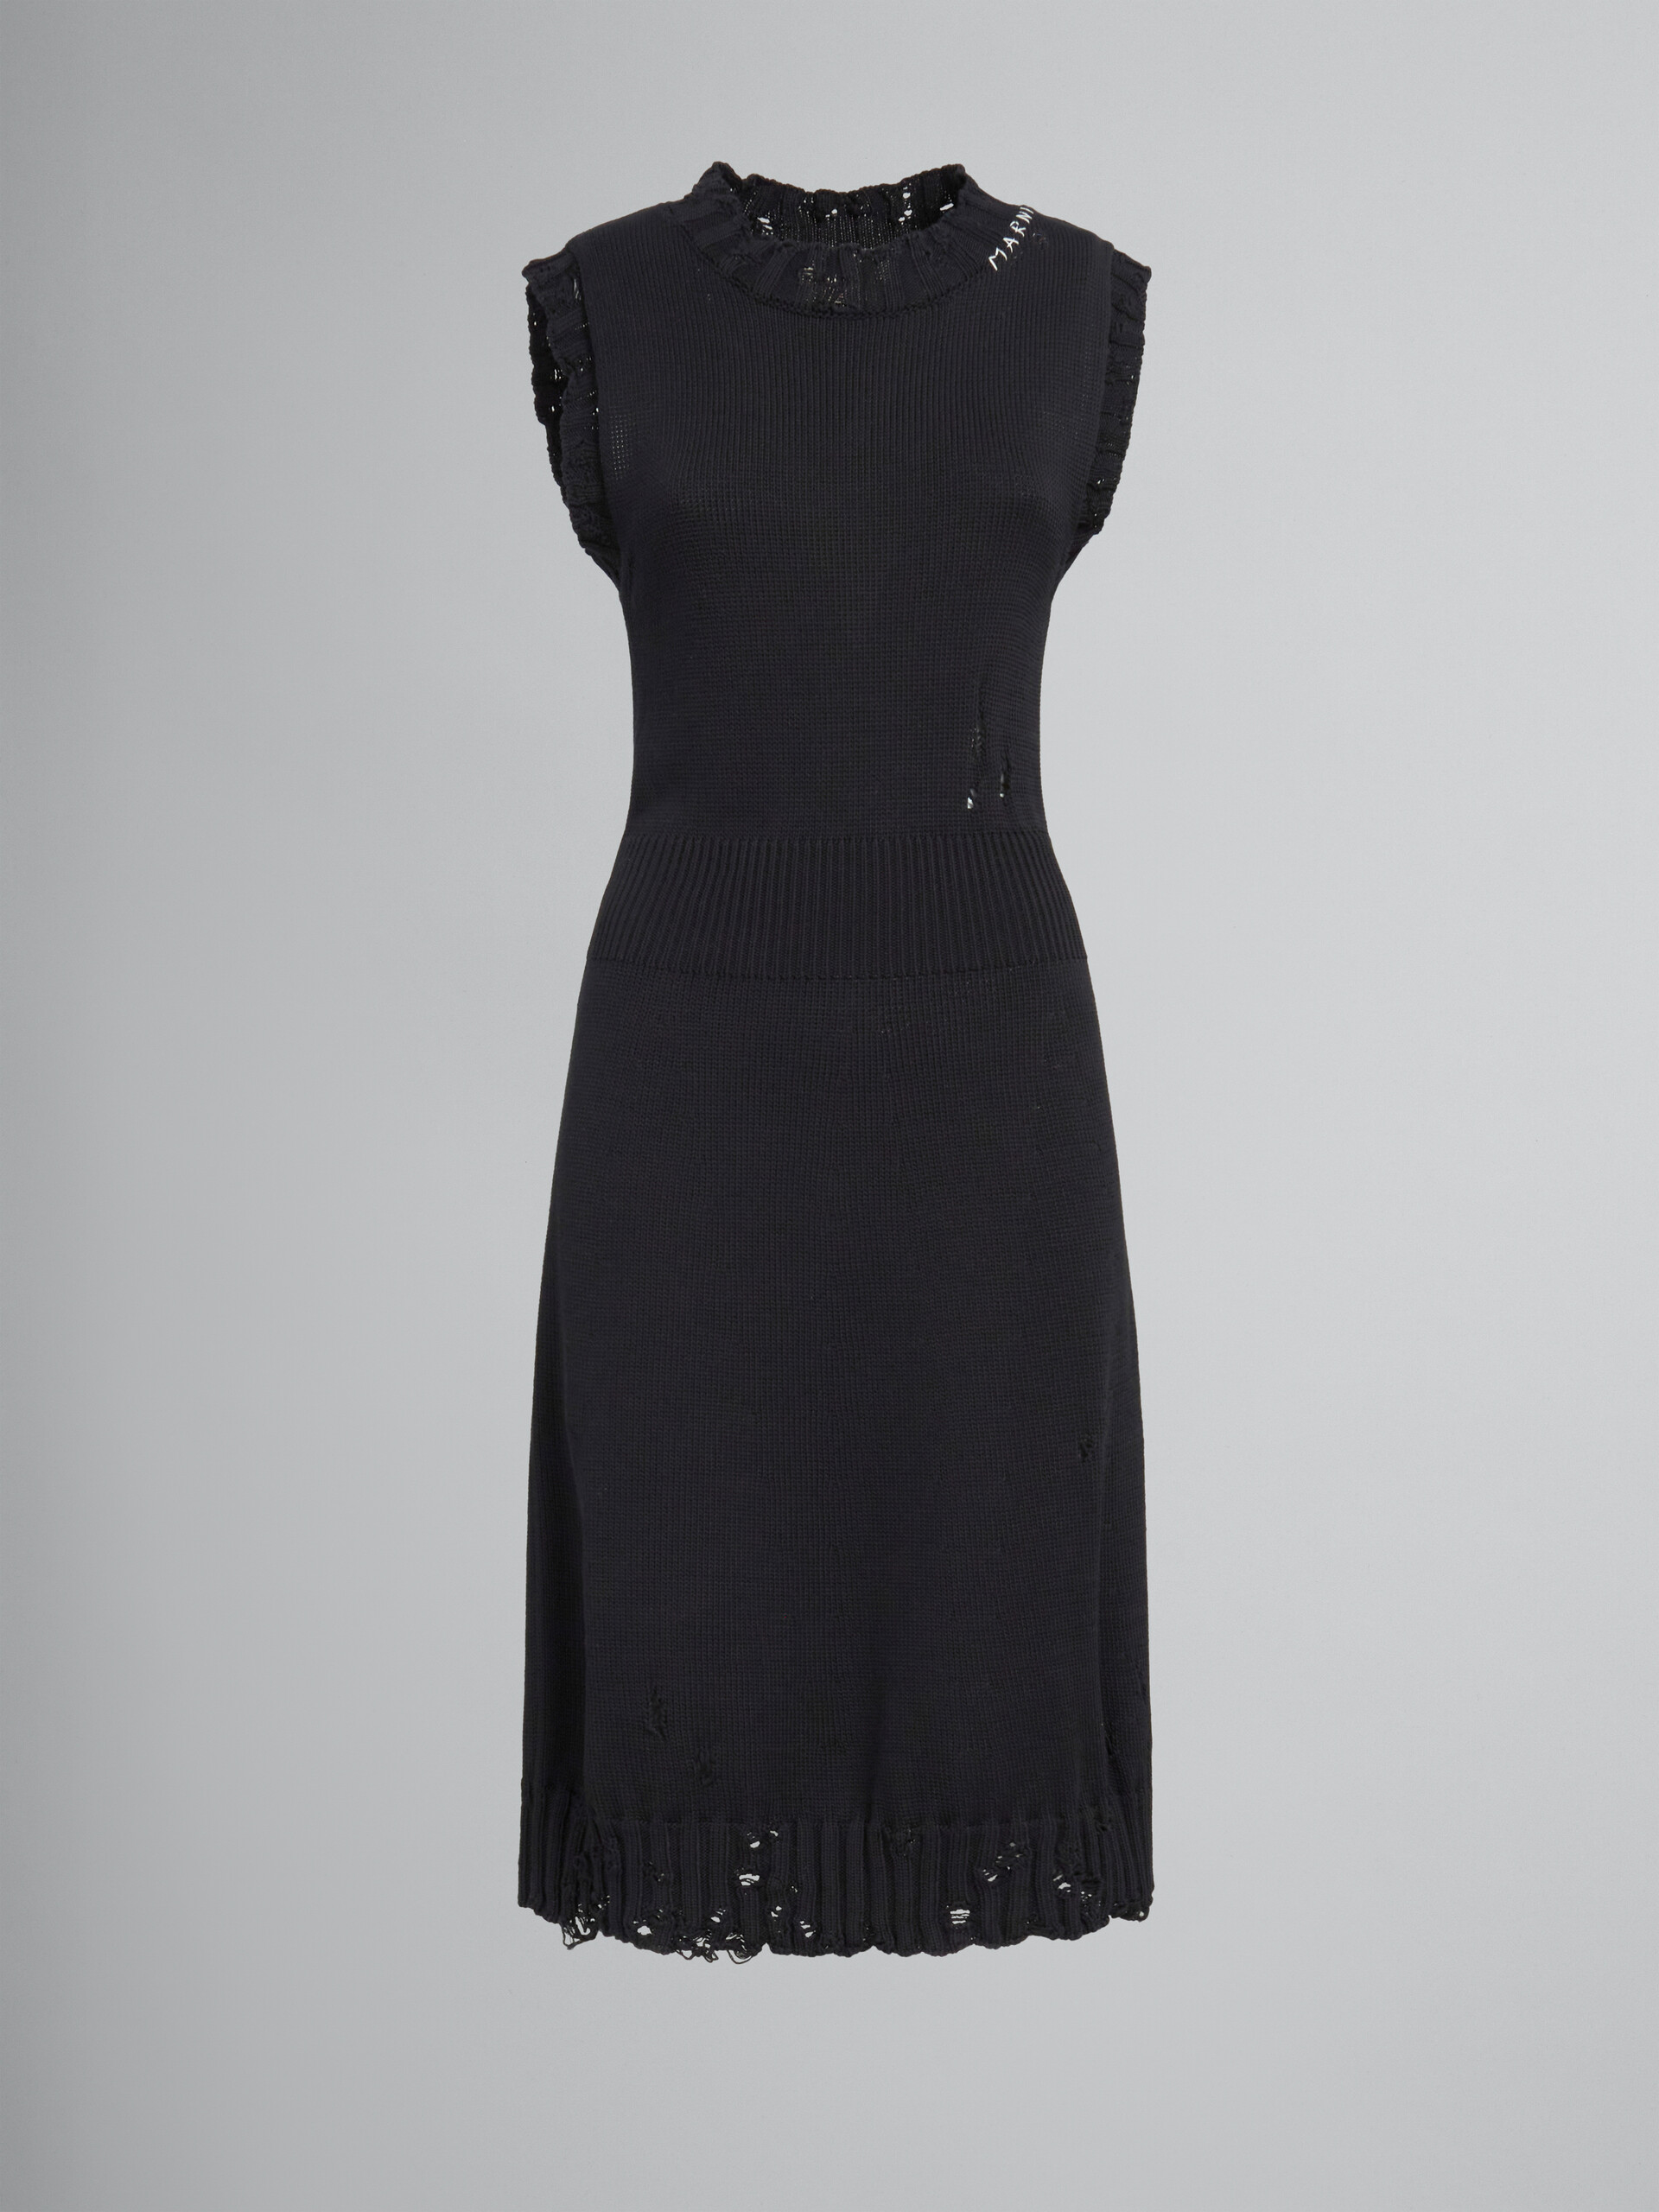 Vestido negro de punto de algodón efecto ajado - Vestidos - Image 1